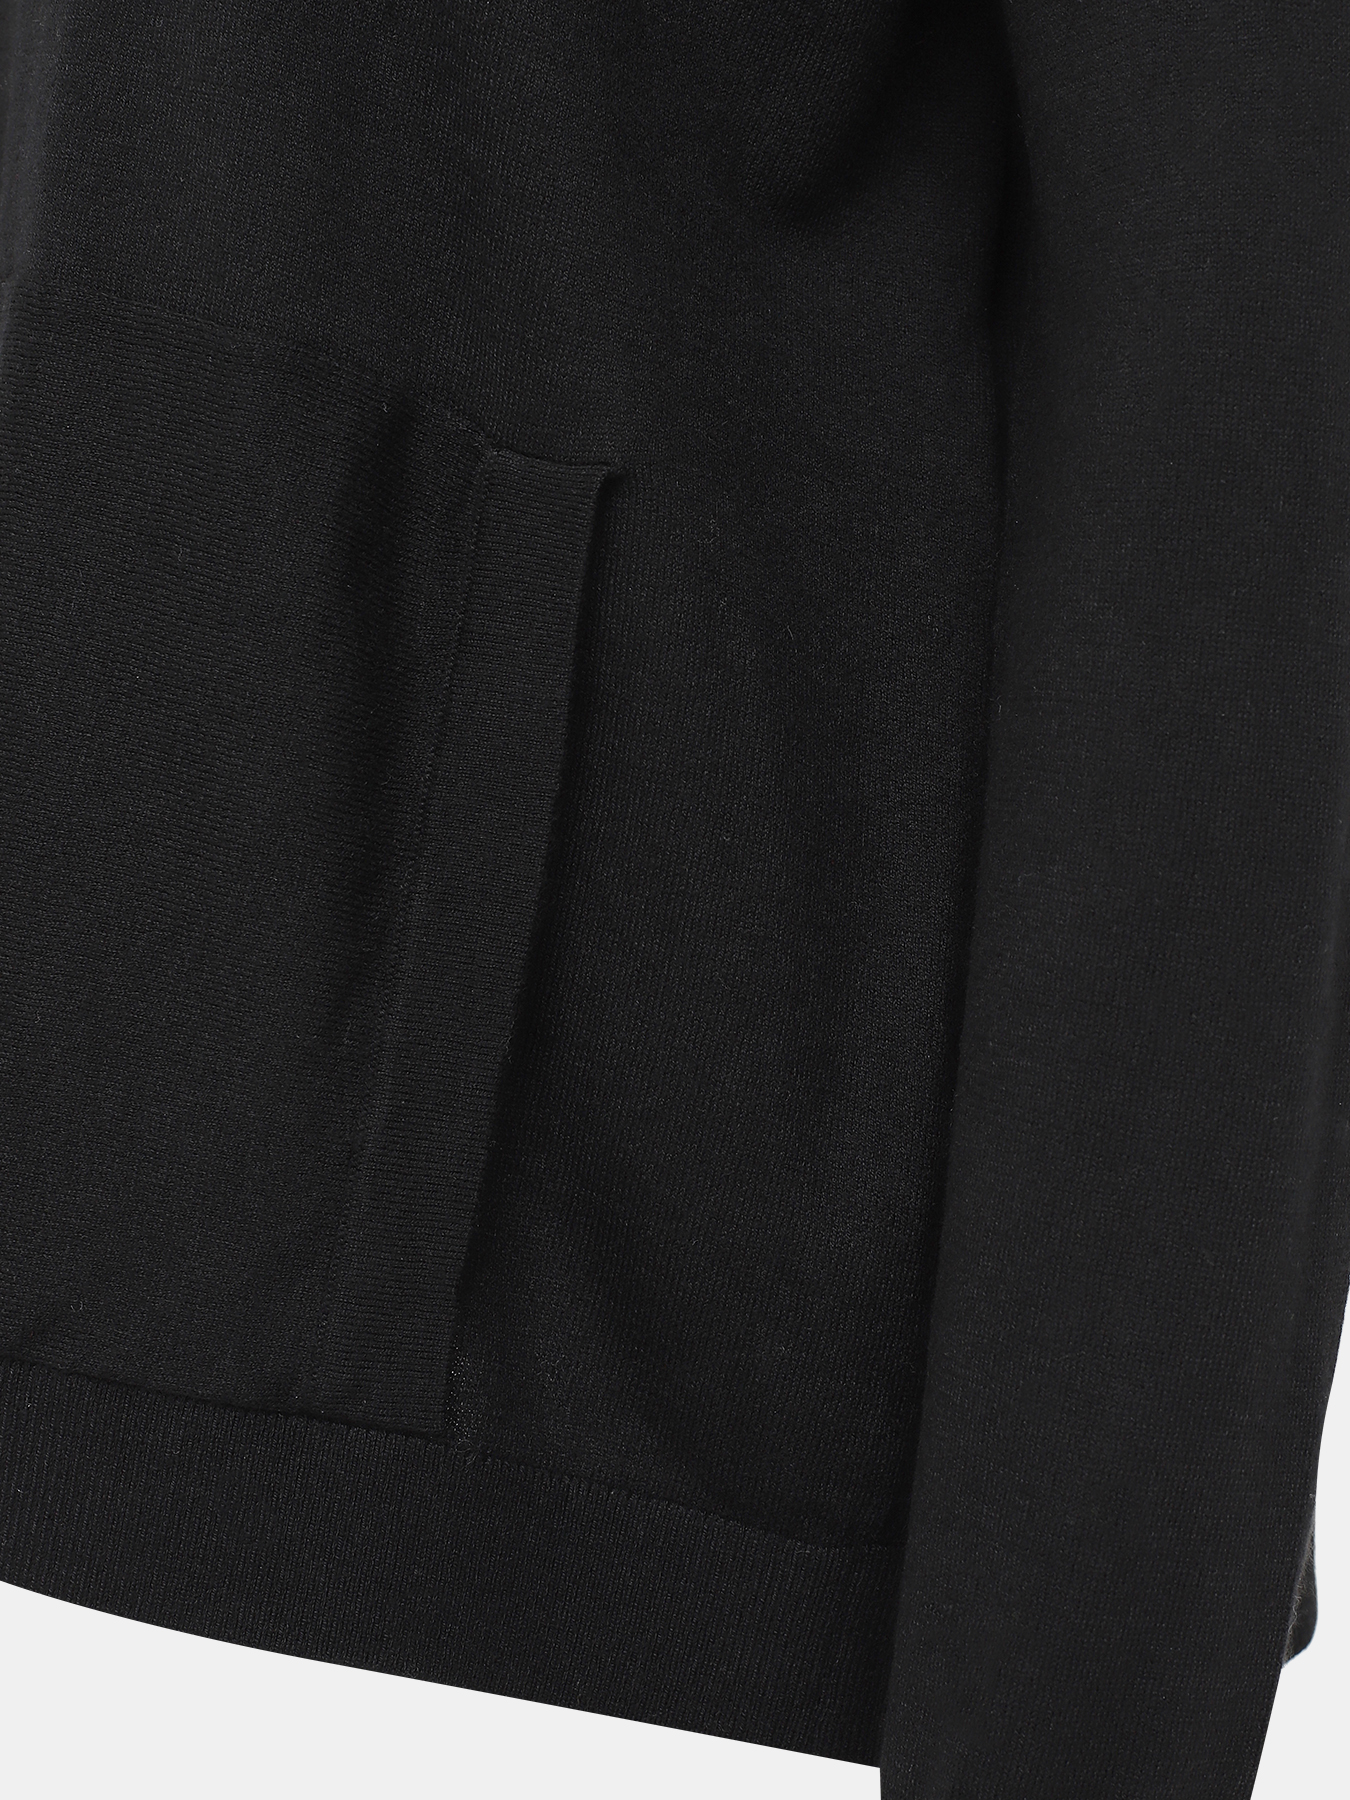 Джемпер с капюшоном Marc Aurel 390182-020, цвет черный, размер 44 - фото 2